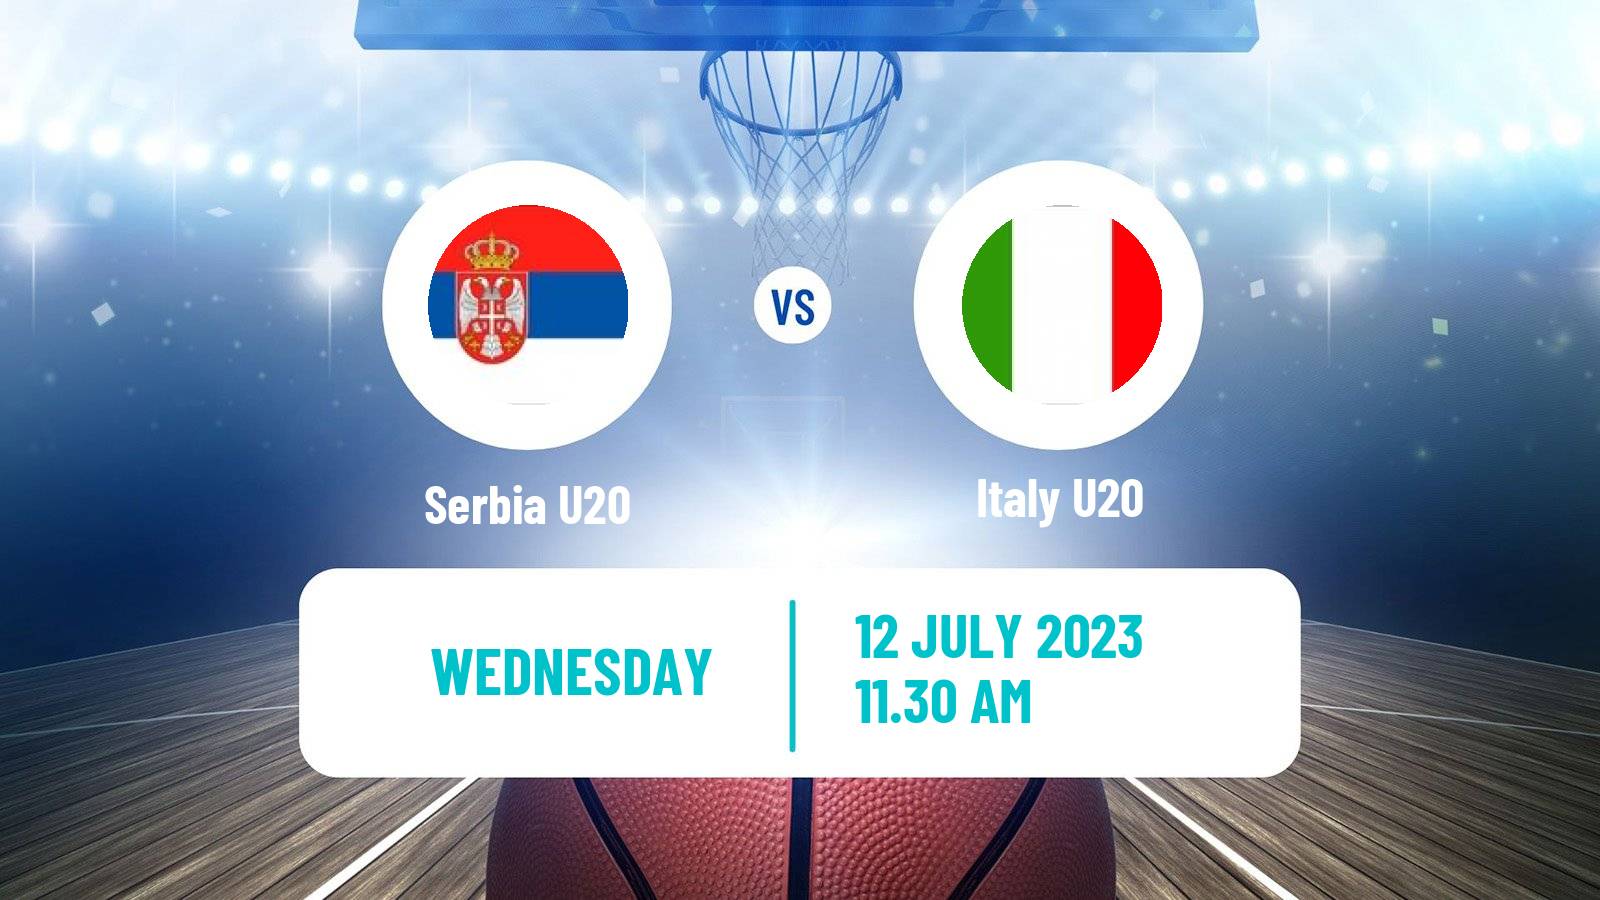 Basketball EuroBasket U20 Serbia U20 - Italy U20